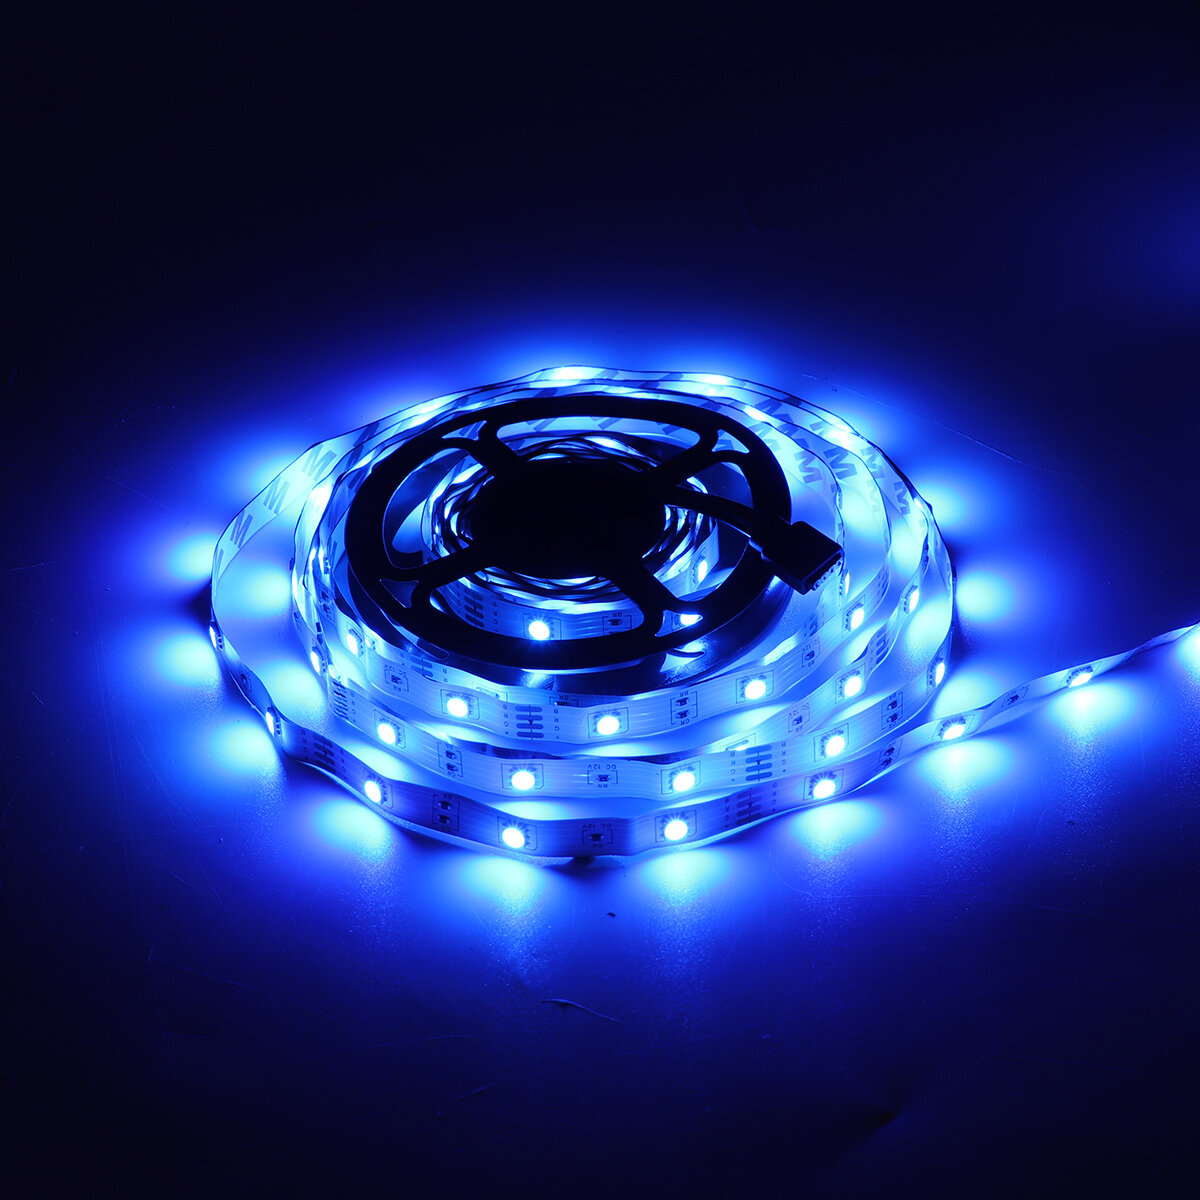 5 متر LED ضوء قطاع مصباح مرن 5050 SMD 44 مفتاح التحكم عن بعد تحكم RGB Colorful سلسلة تغيير ضوءs غرفة نوم منزلية ضوءing